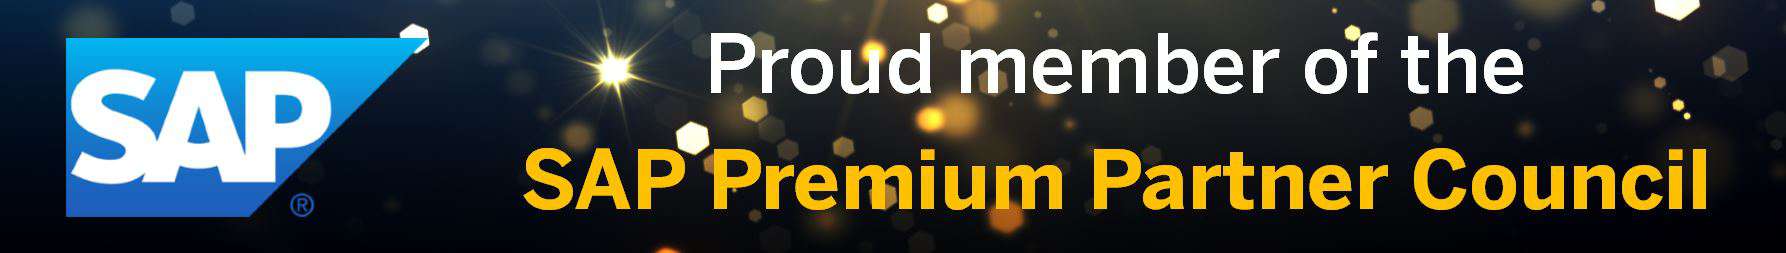 SAP Premium Partner Council